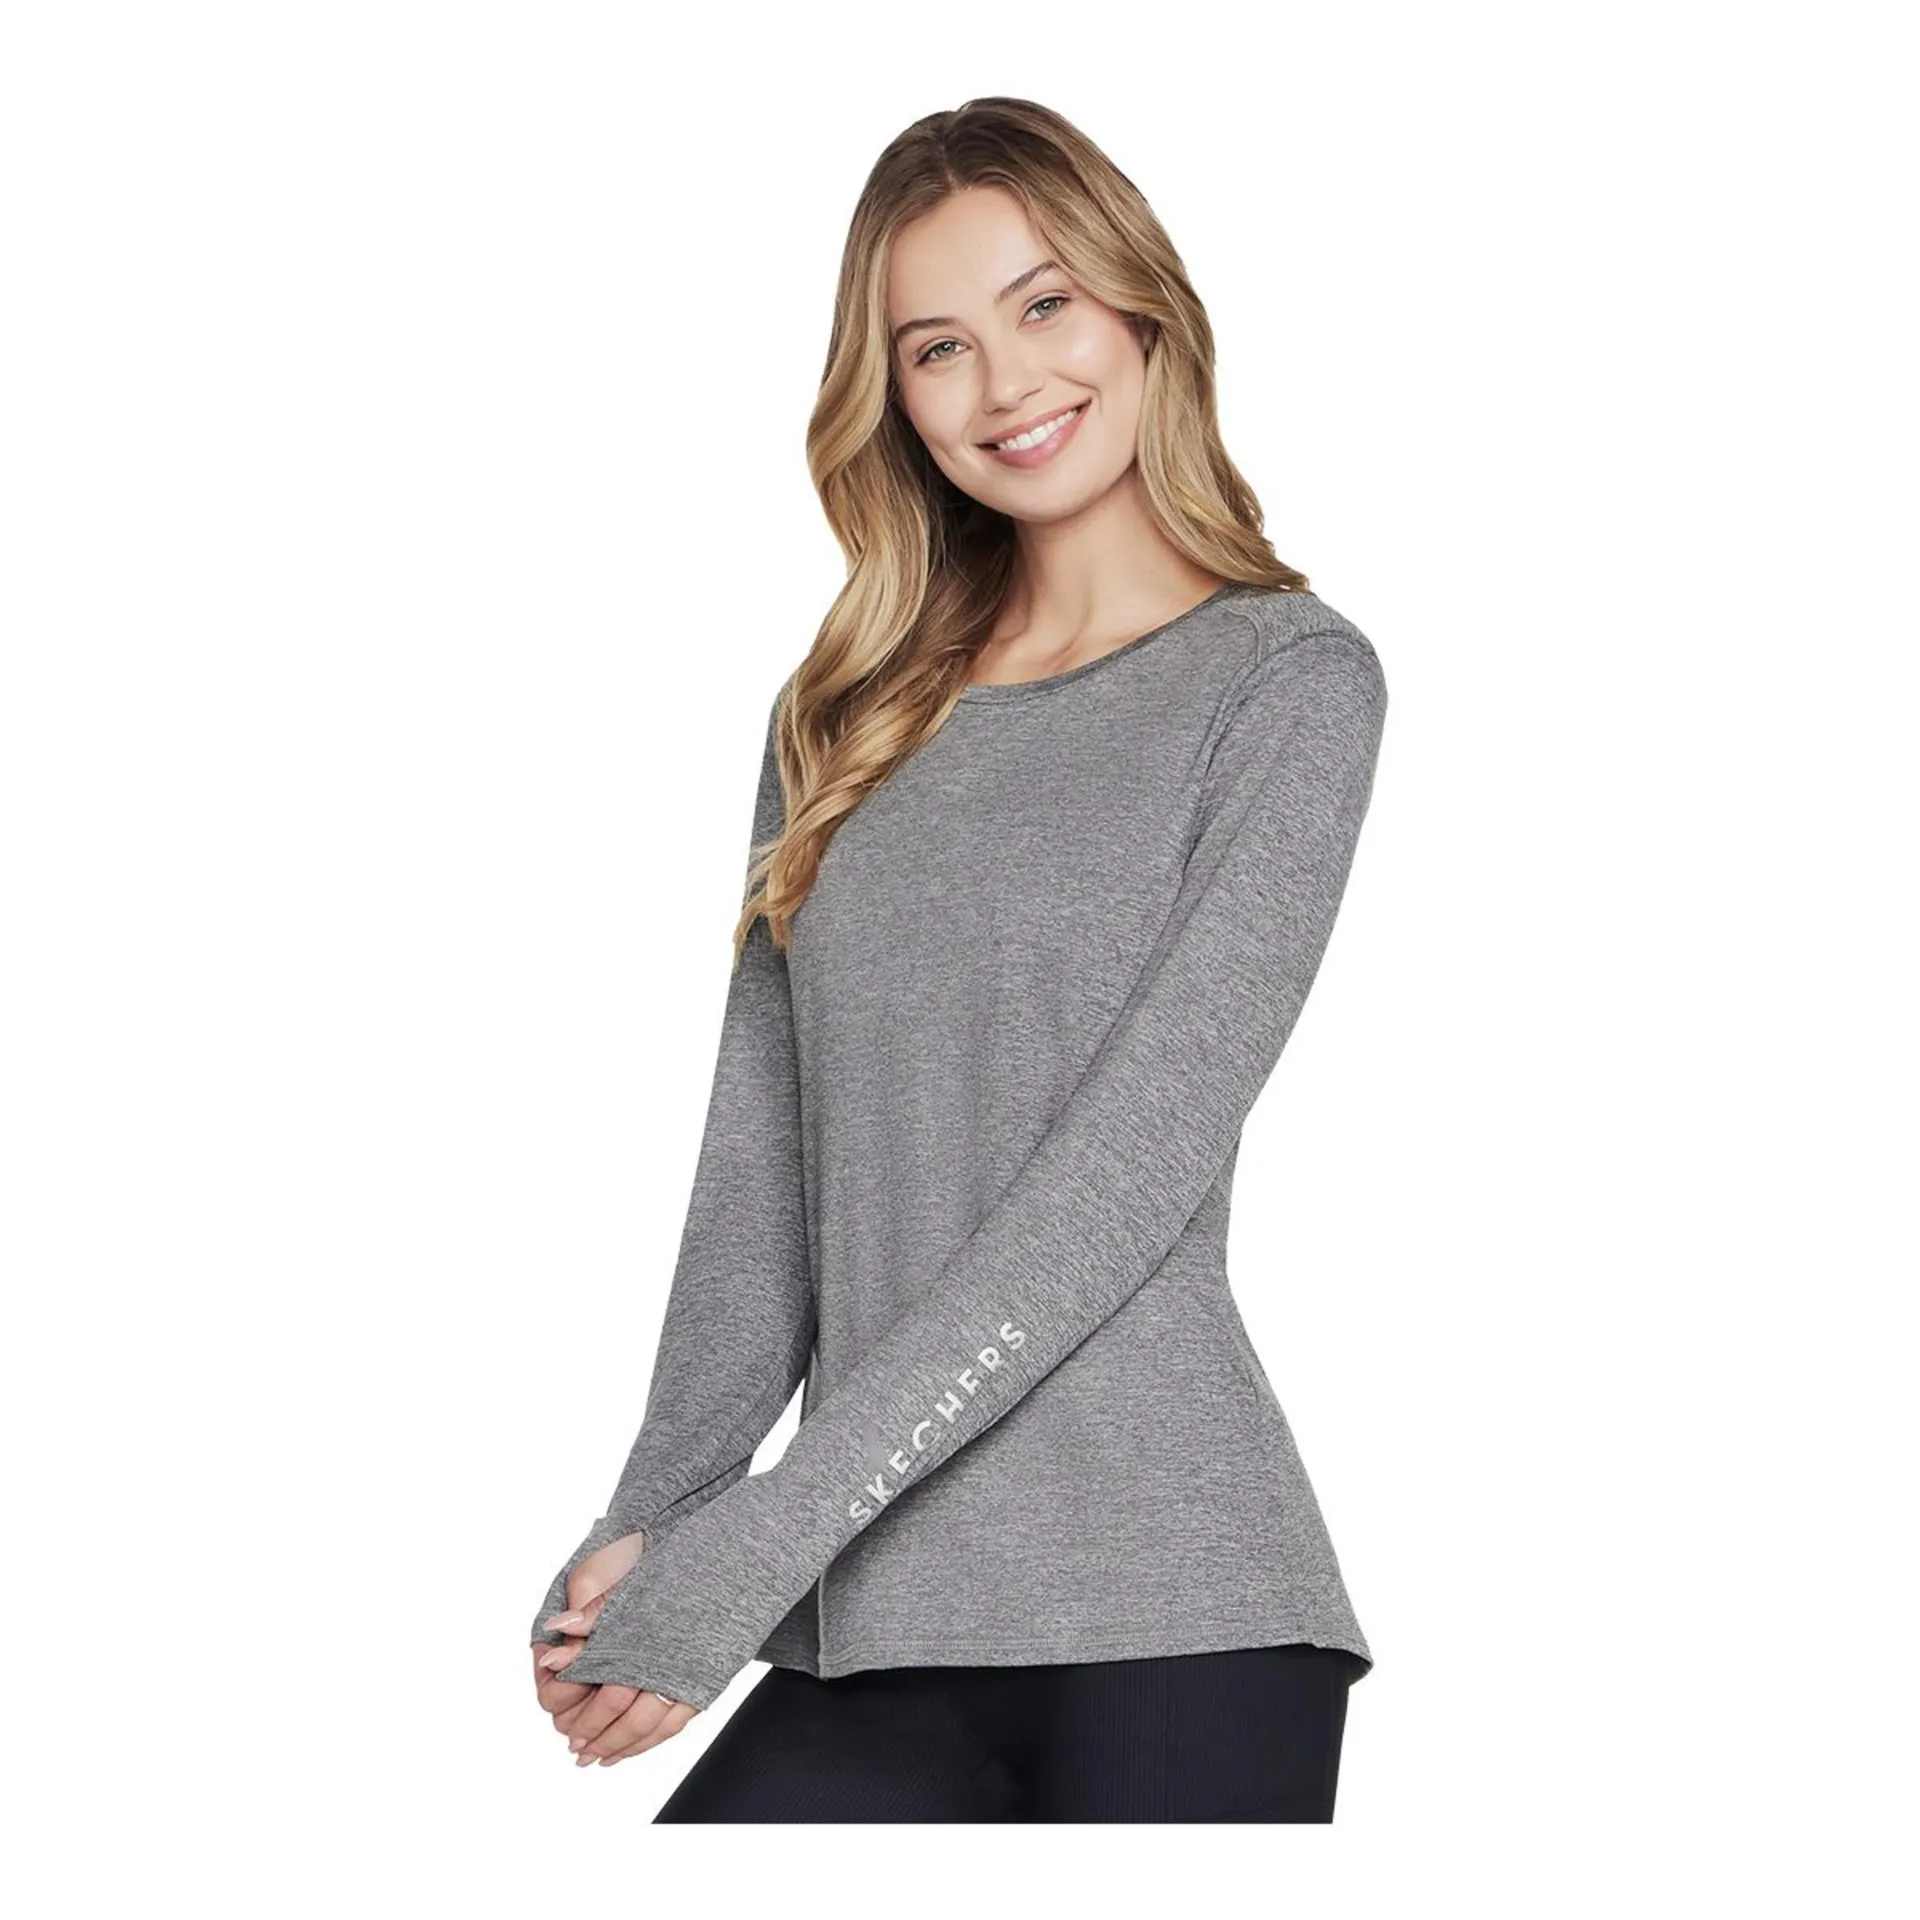 Skechers Women's Godri Swift Knit Long Sleeve Sweatshirt